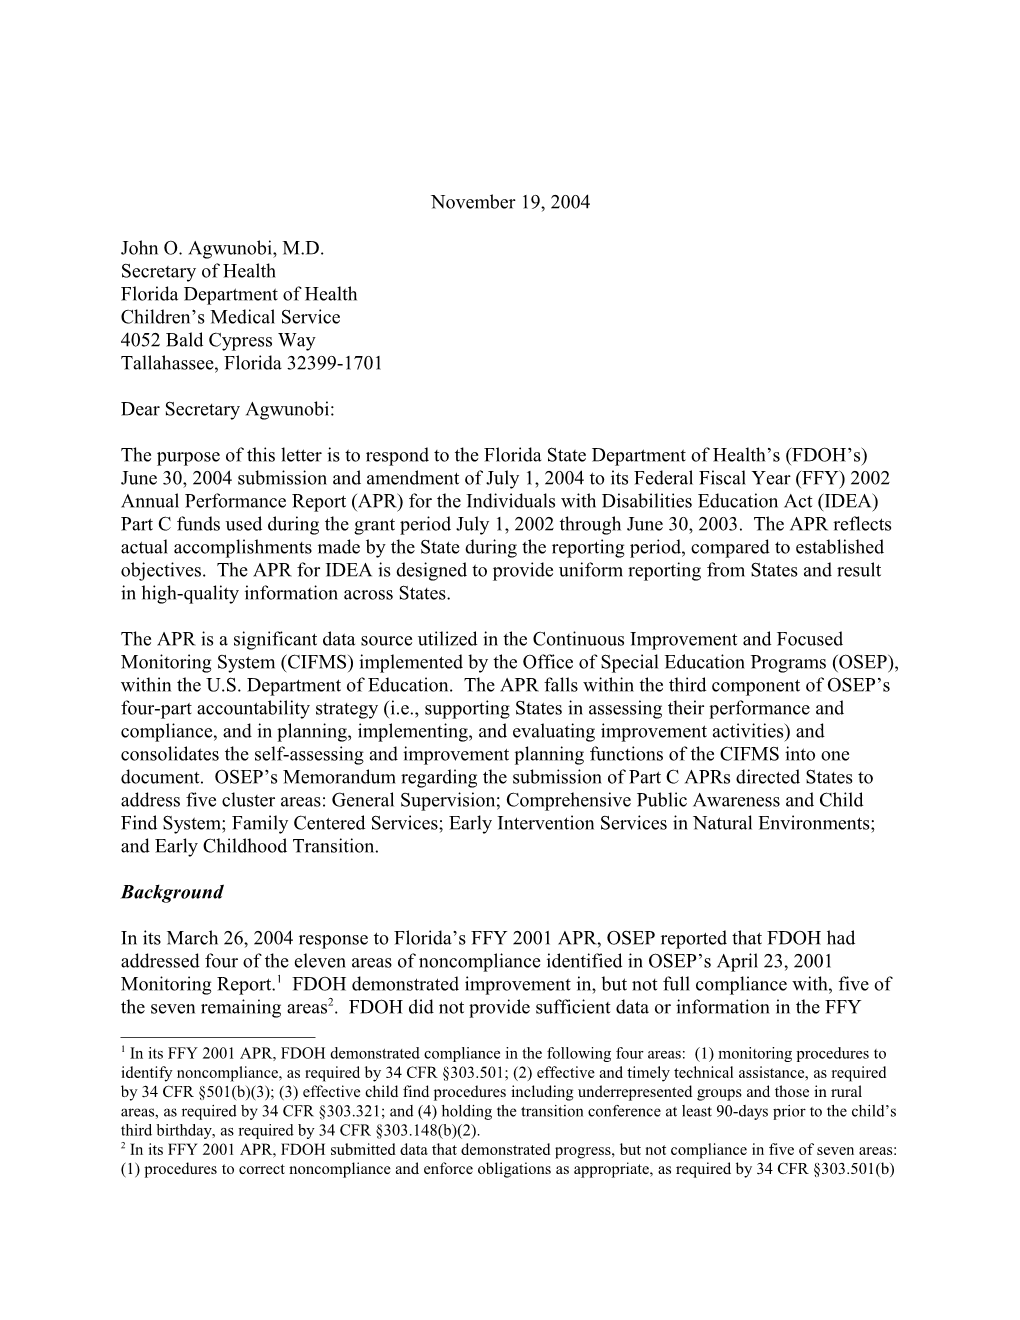 Florida Part C APR Letter, 2002-2003 (MS Word)